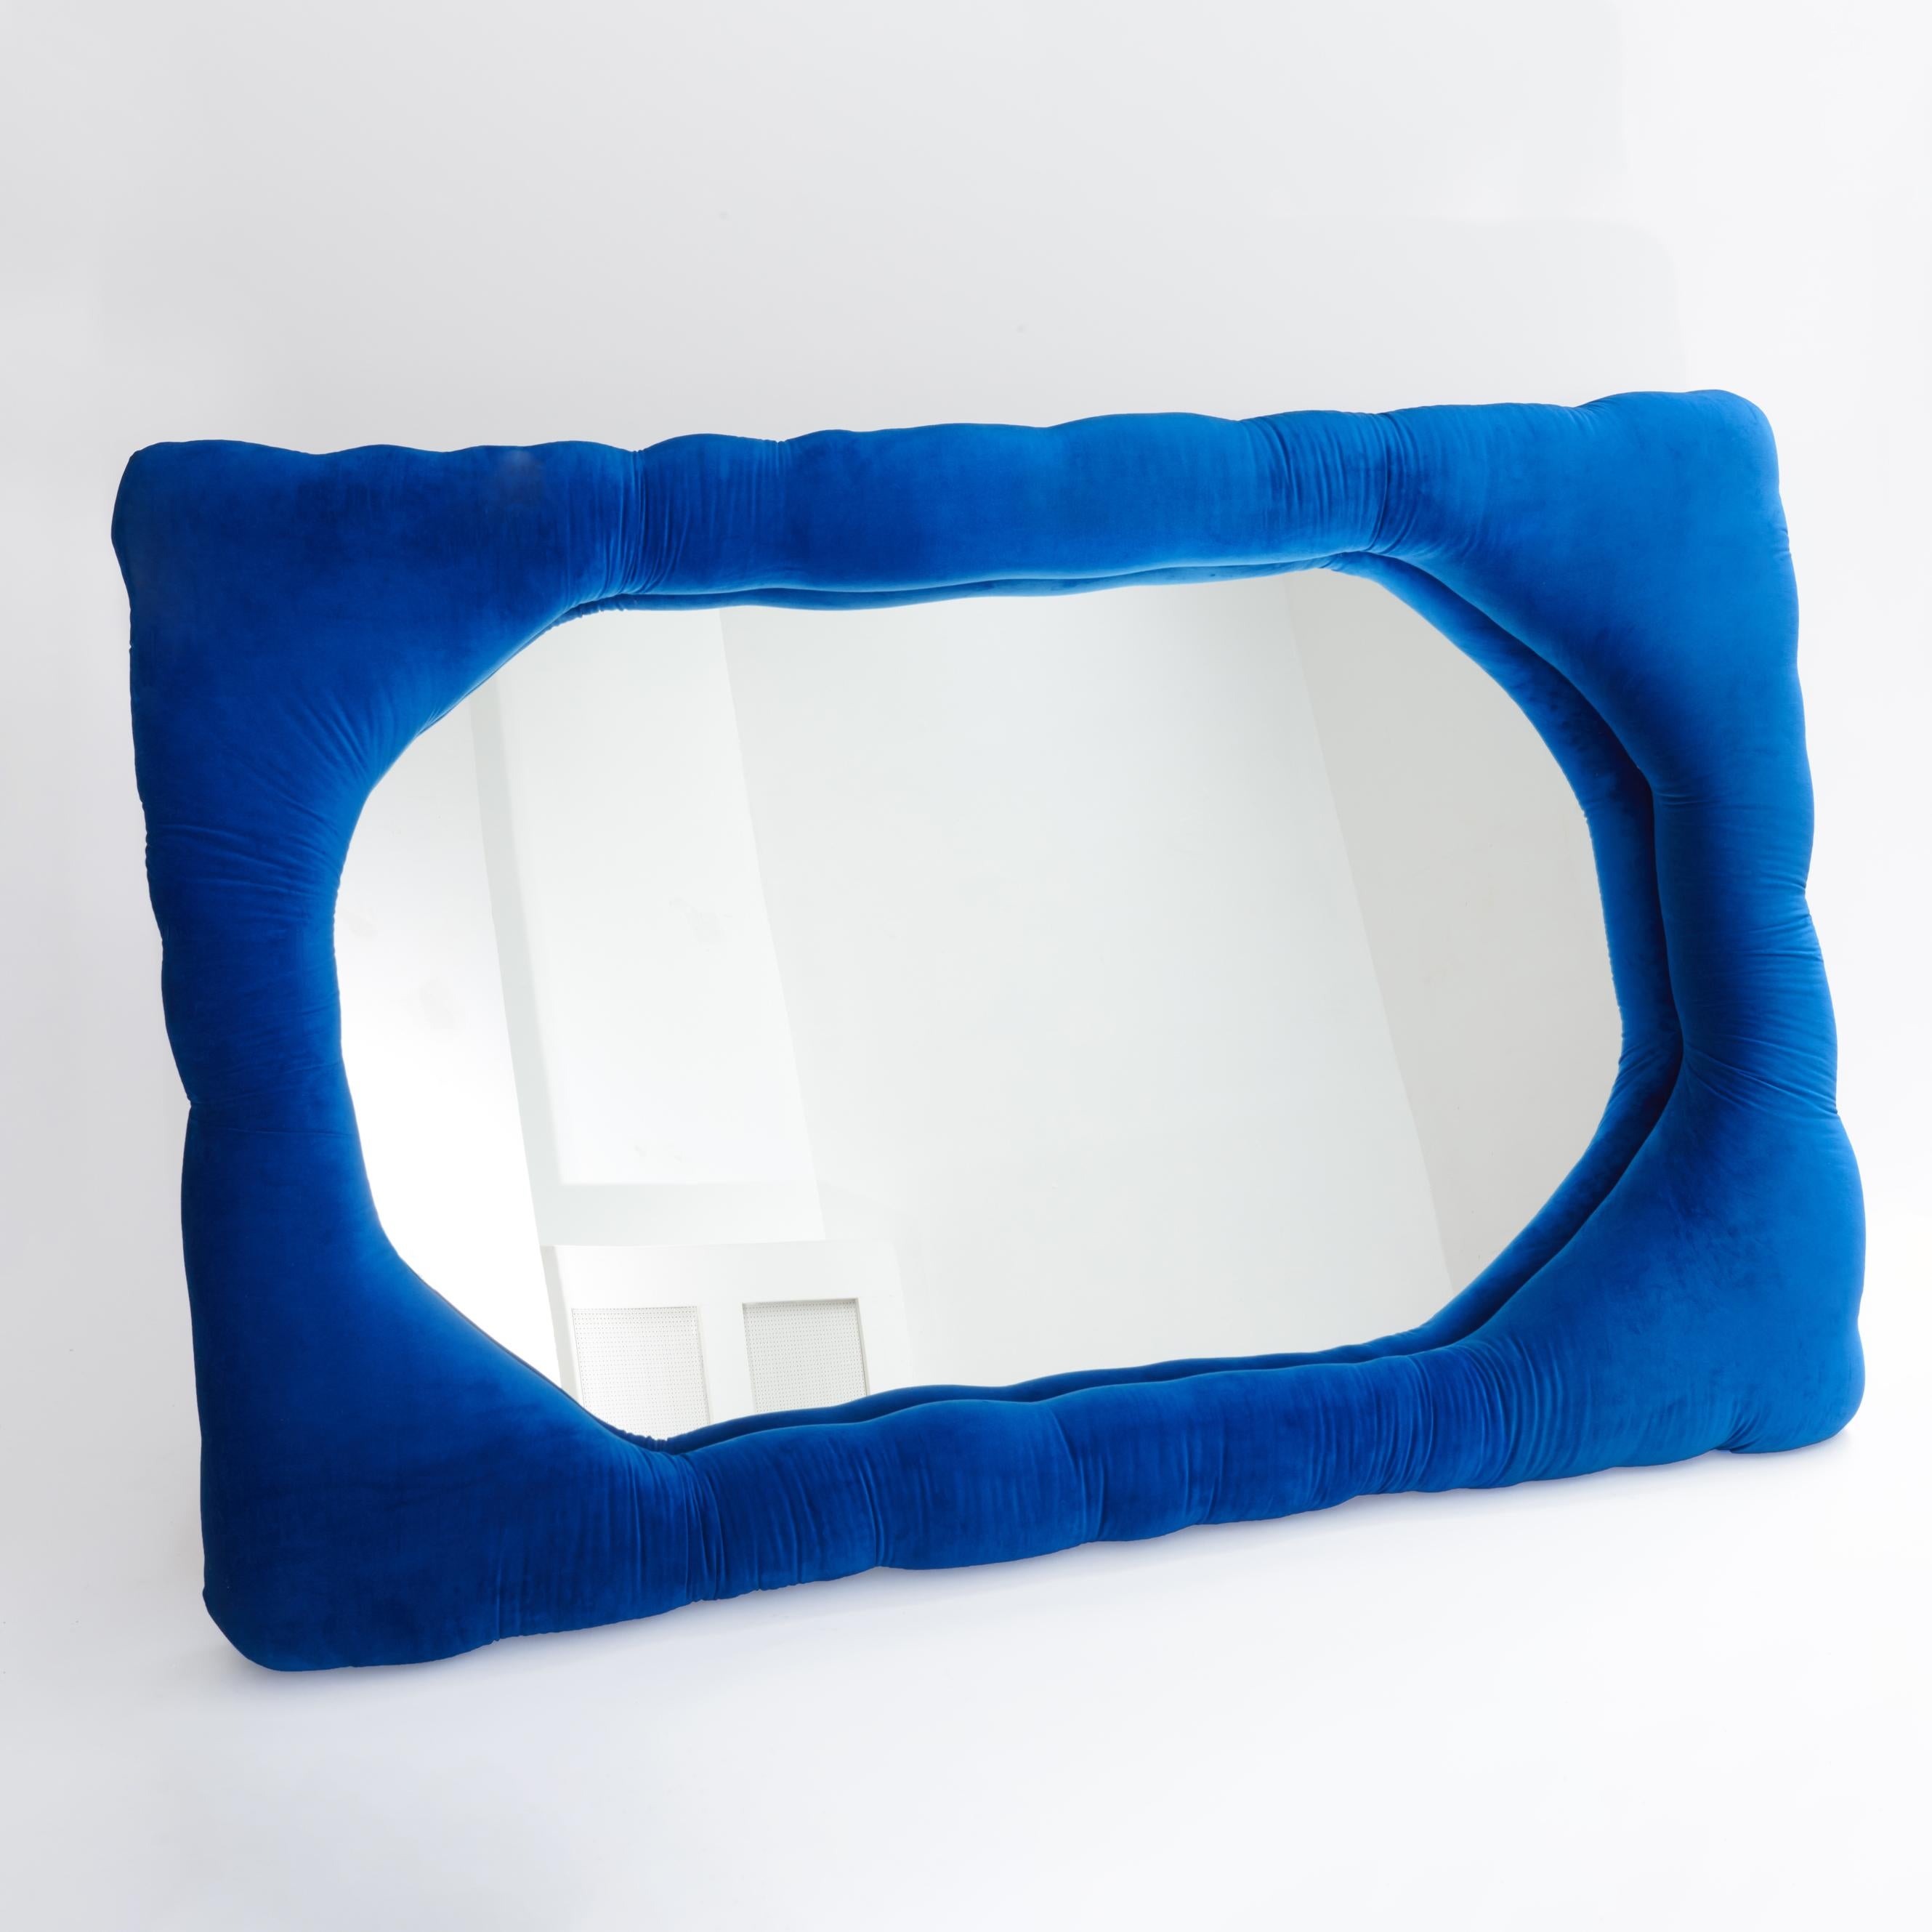 Biomorpher Spiegel von Brandi Howe

Samtstoff, Glas, Holz

Abgebildet: 72 x 47 x 6 Zoll.

Dieser Spiegel ist in verschiedenen Farben, Stoffen und Größen anpassbar.

Andere Größe verfügbar: 60 x 15 Zoll.

Der Versand ist nicht inbegriffen. Siehe